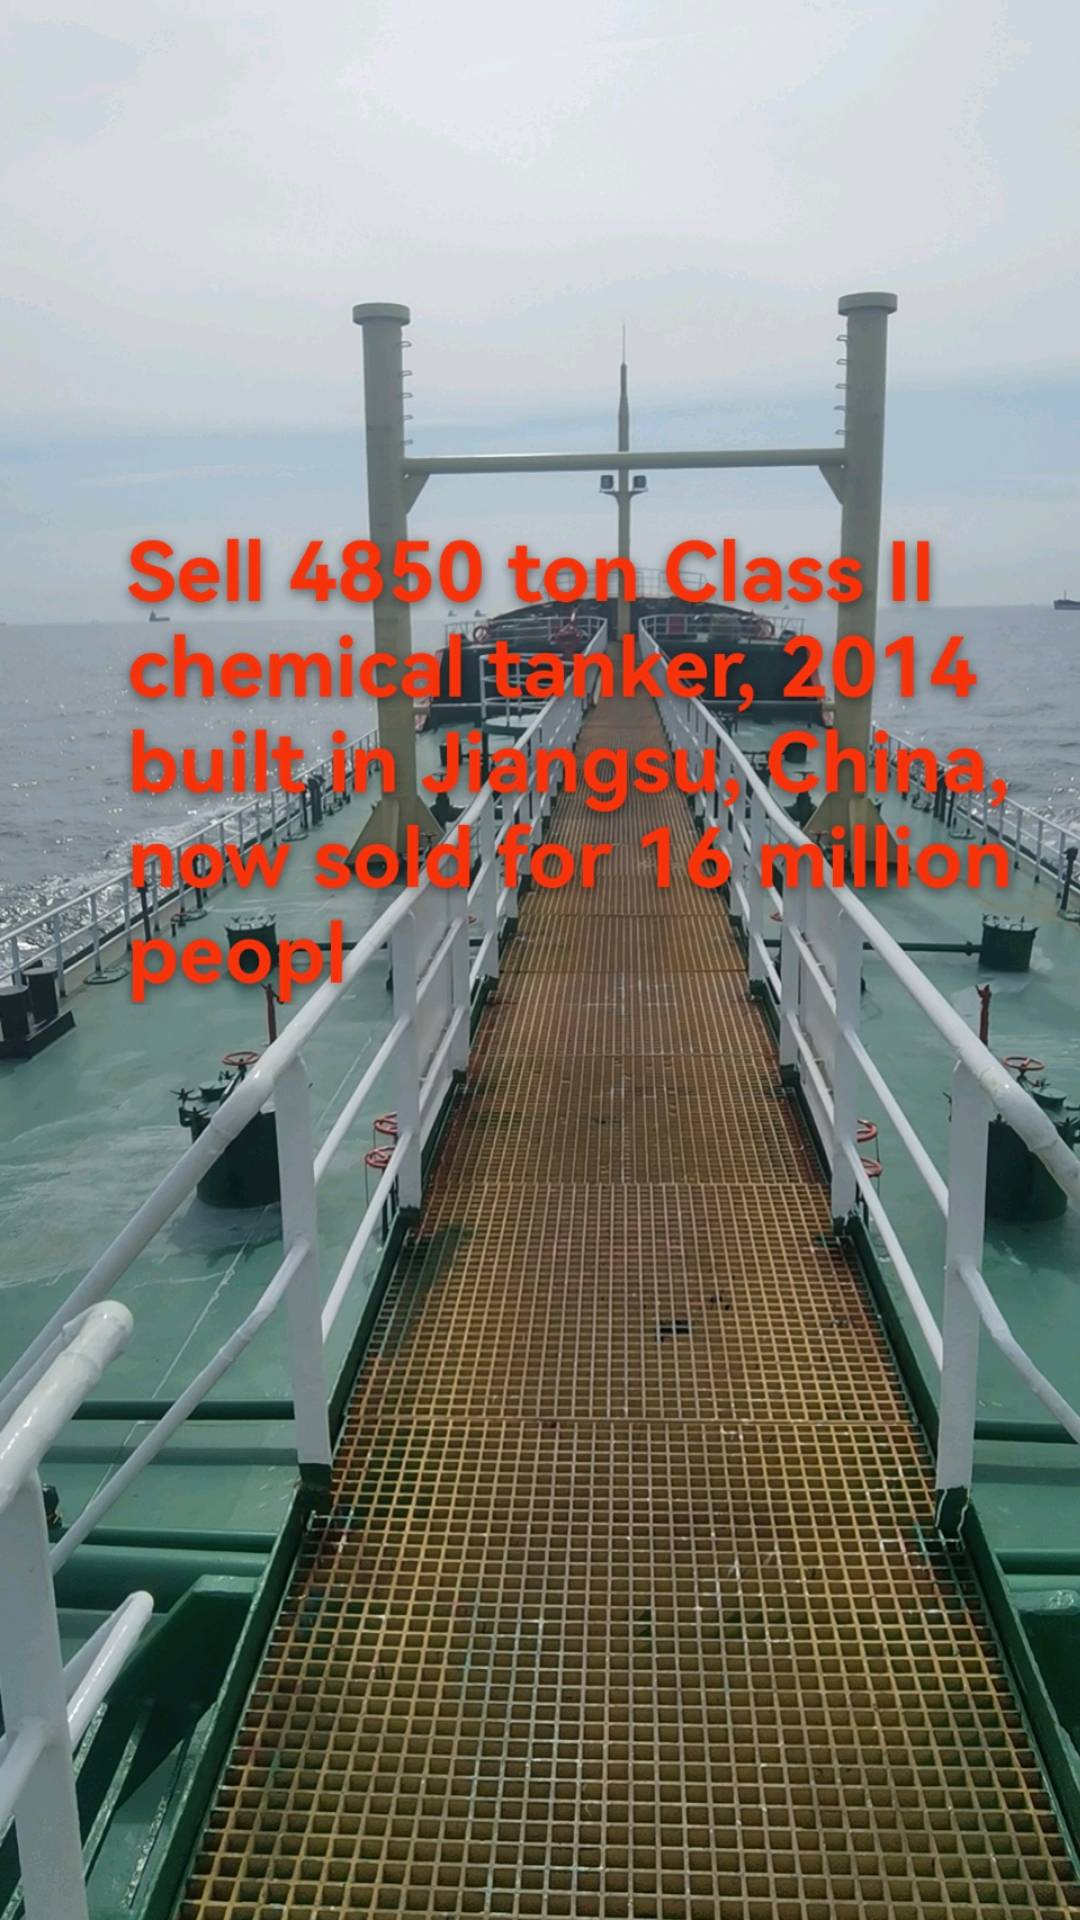 出售4850吨二类化学品船